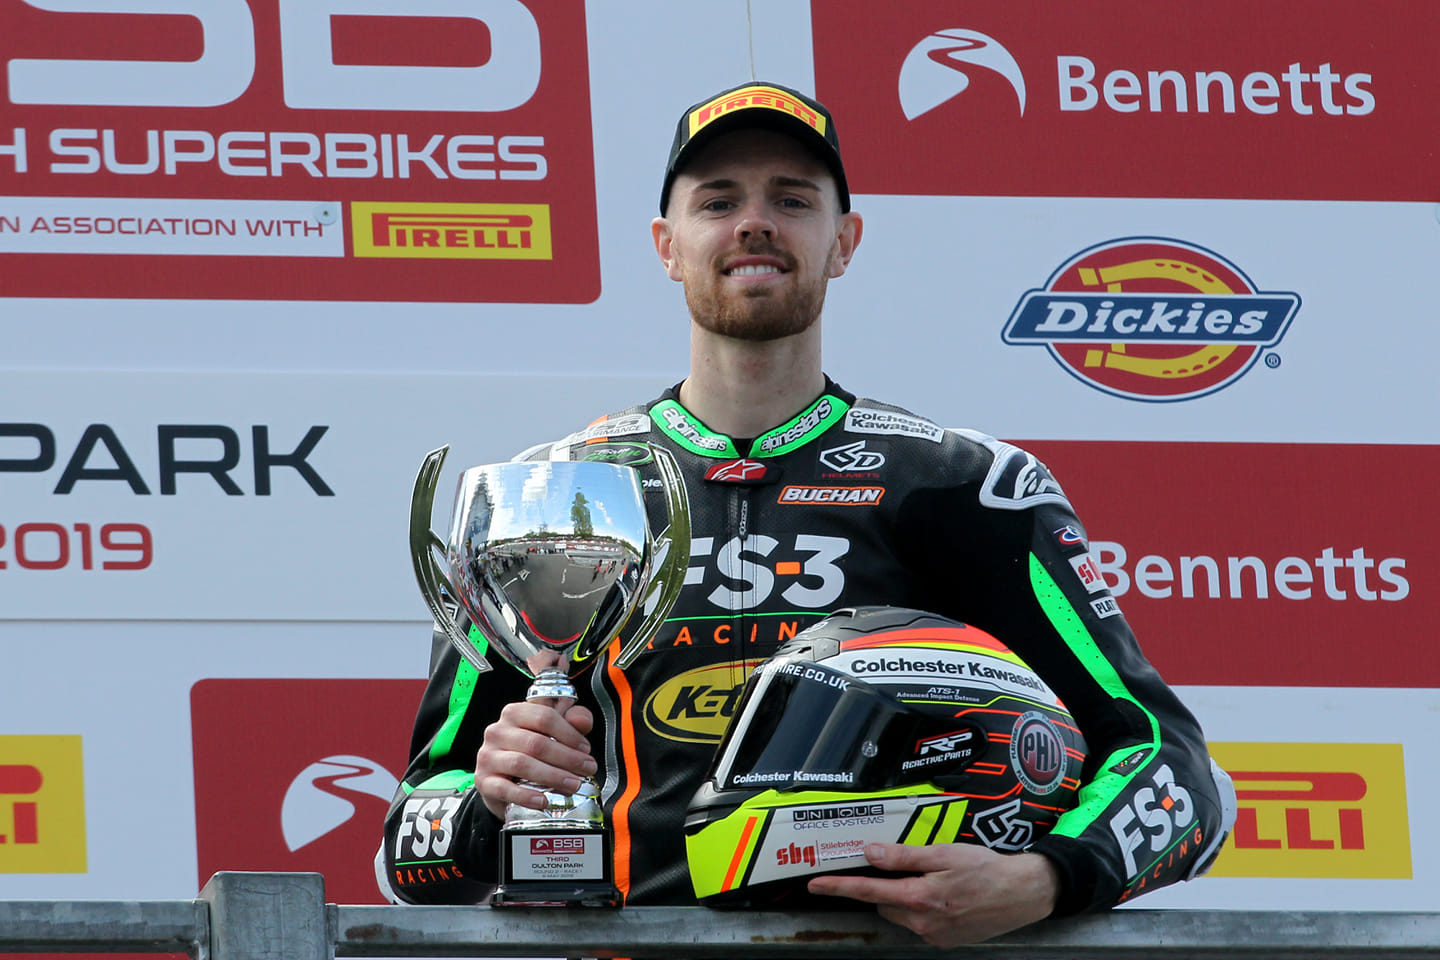 Danny Buchan Scores Podium at round 2 of the 2019 British Superbike Championship